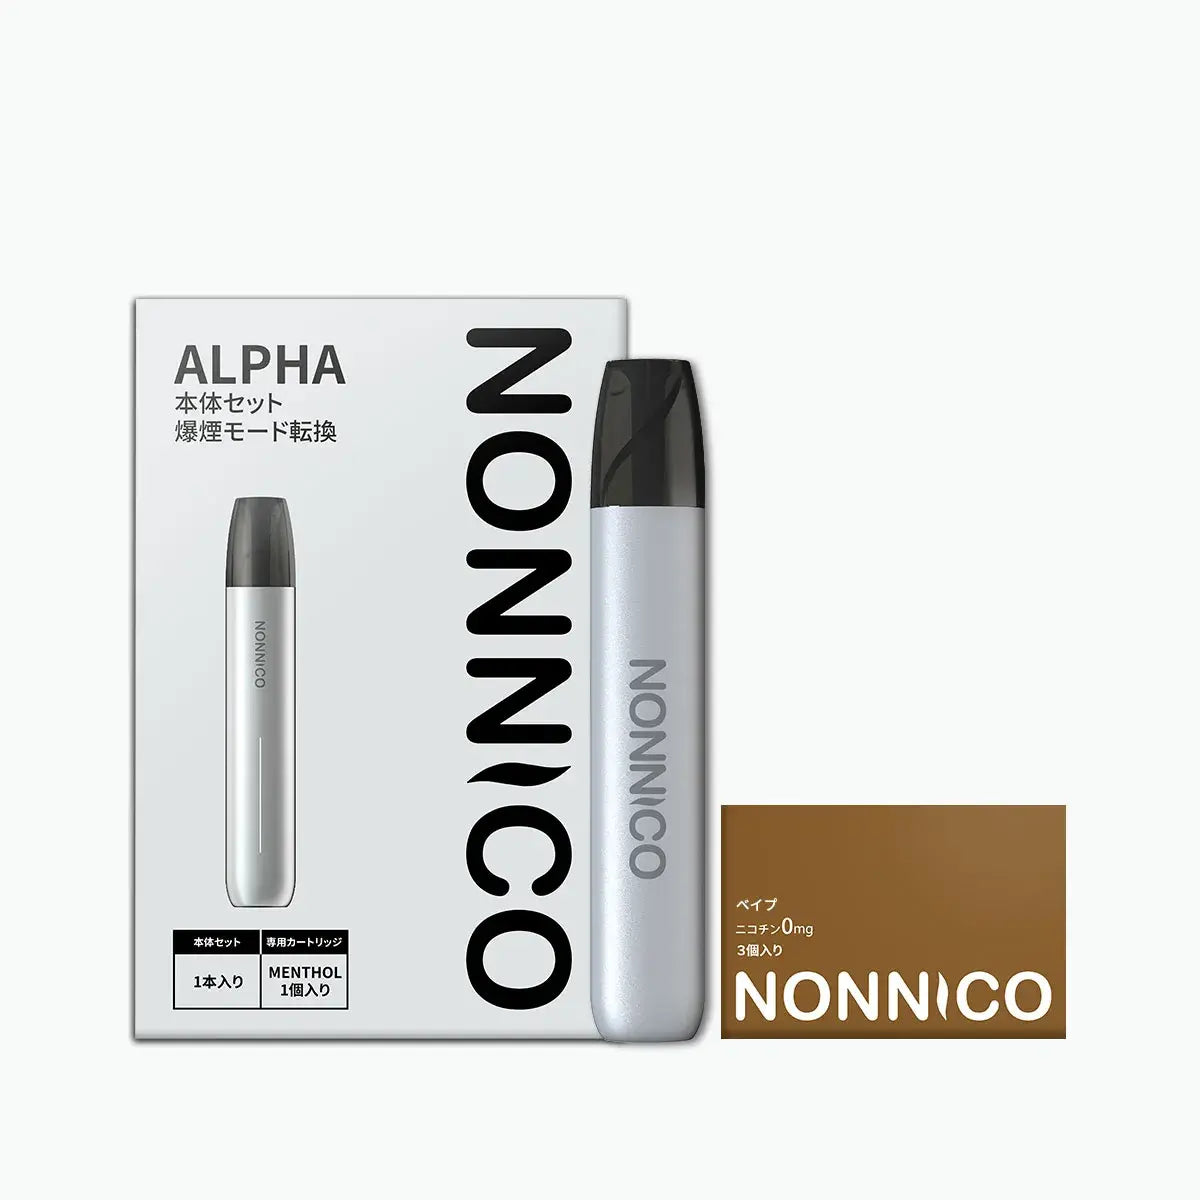 NONNICO Alpha POD型電子タバコ vape キットセット（シルバー / スモーク）